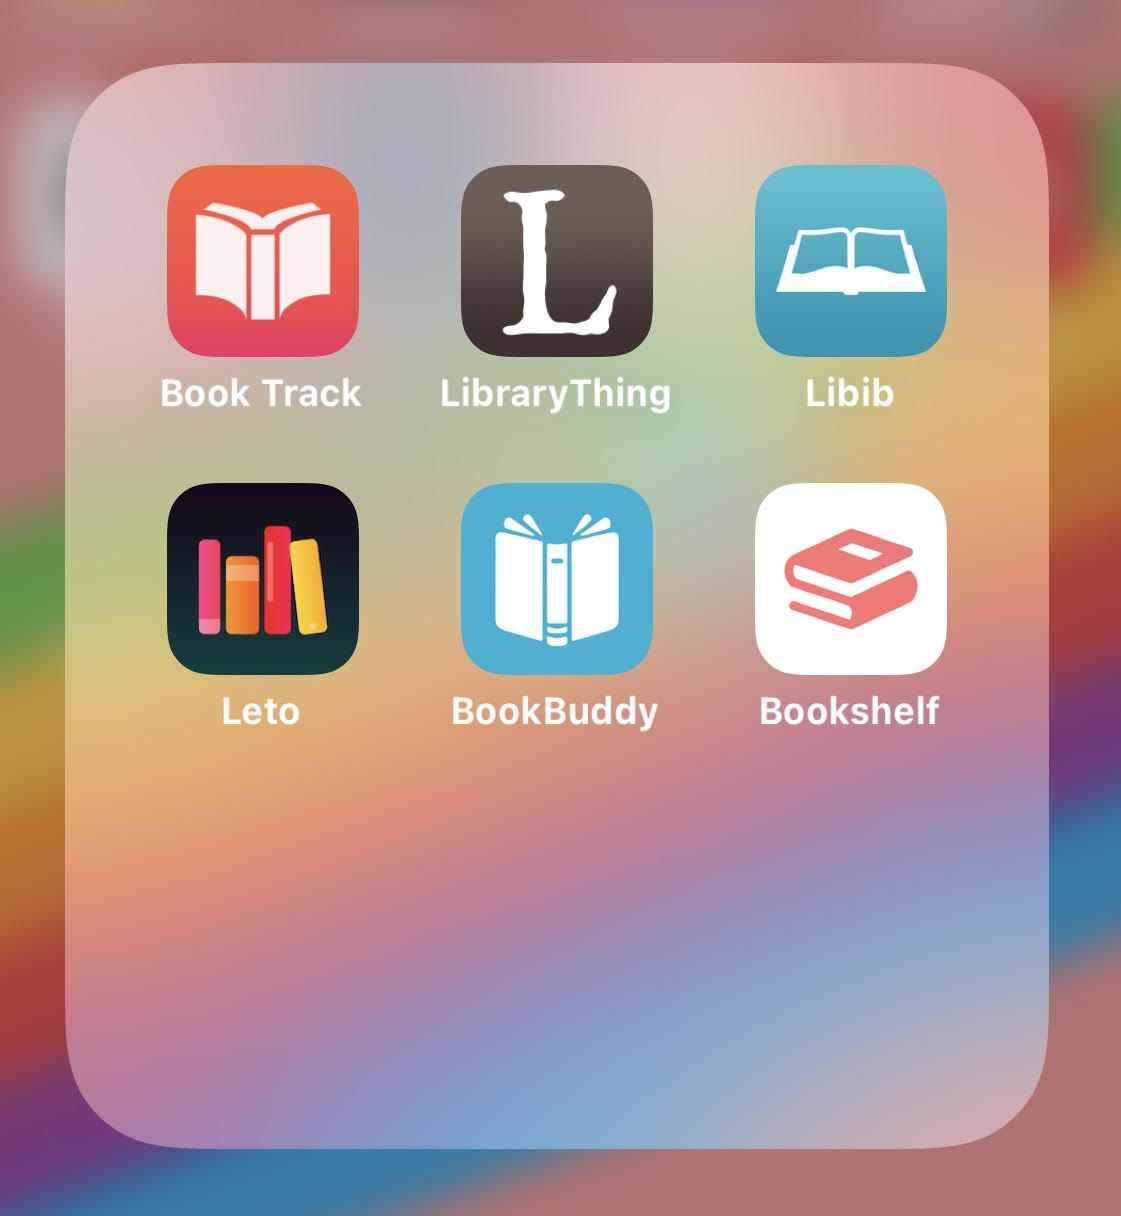 Une capture d'écran d'un téléphone montrant 6 icônes d'application.  Les applications sont Book Track, Library Thing, Libib, Leto, Book Buddy et Bookshelf. 